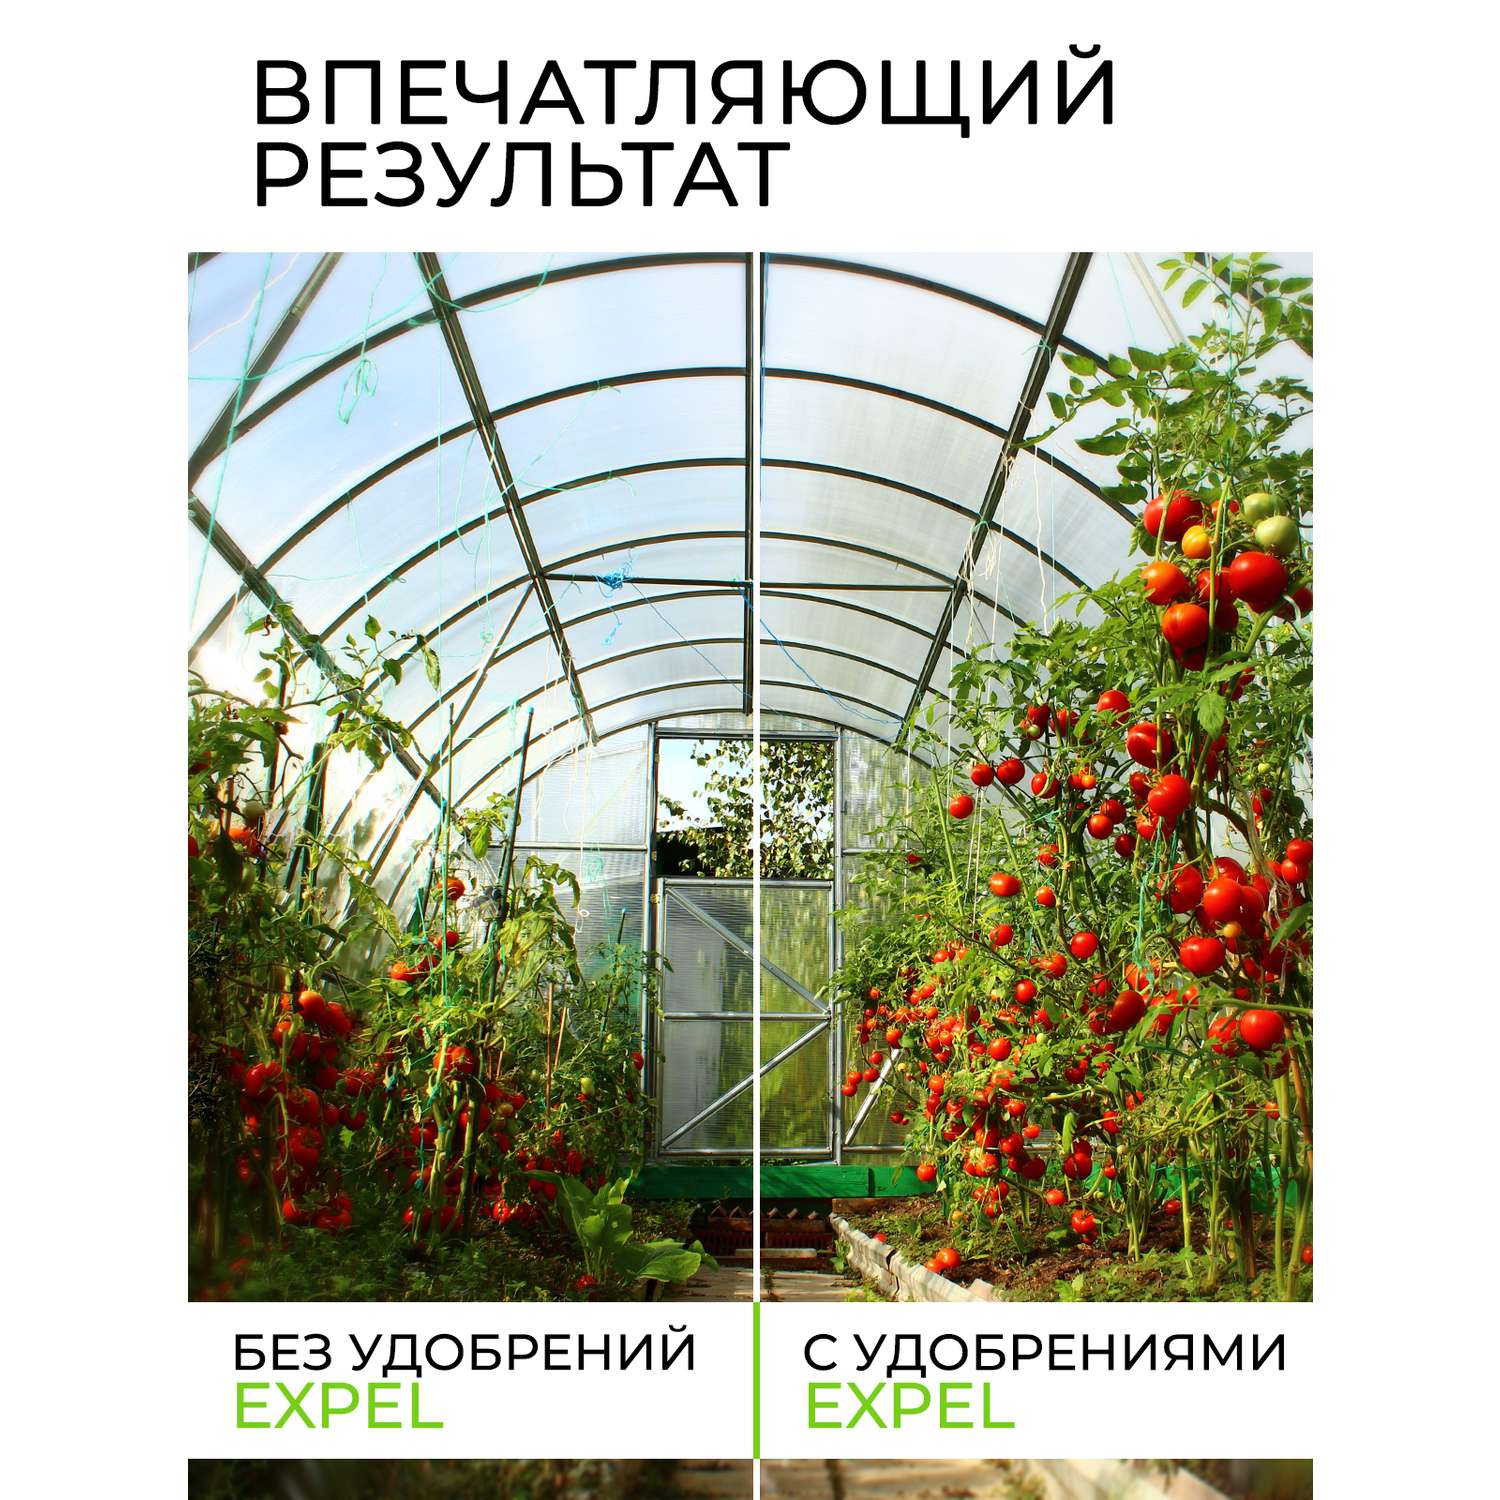 Удобрение для томатов Expel 12 органик микс NPK 4-2-1 - фото 5